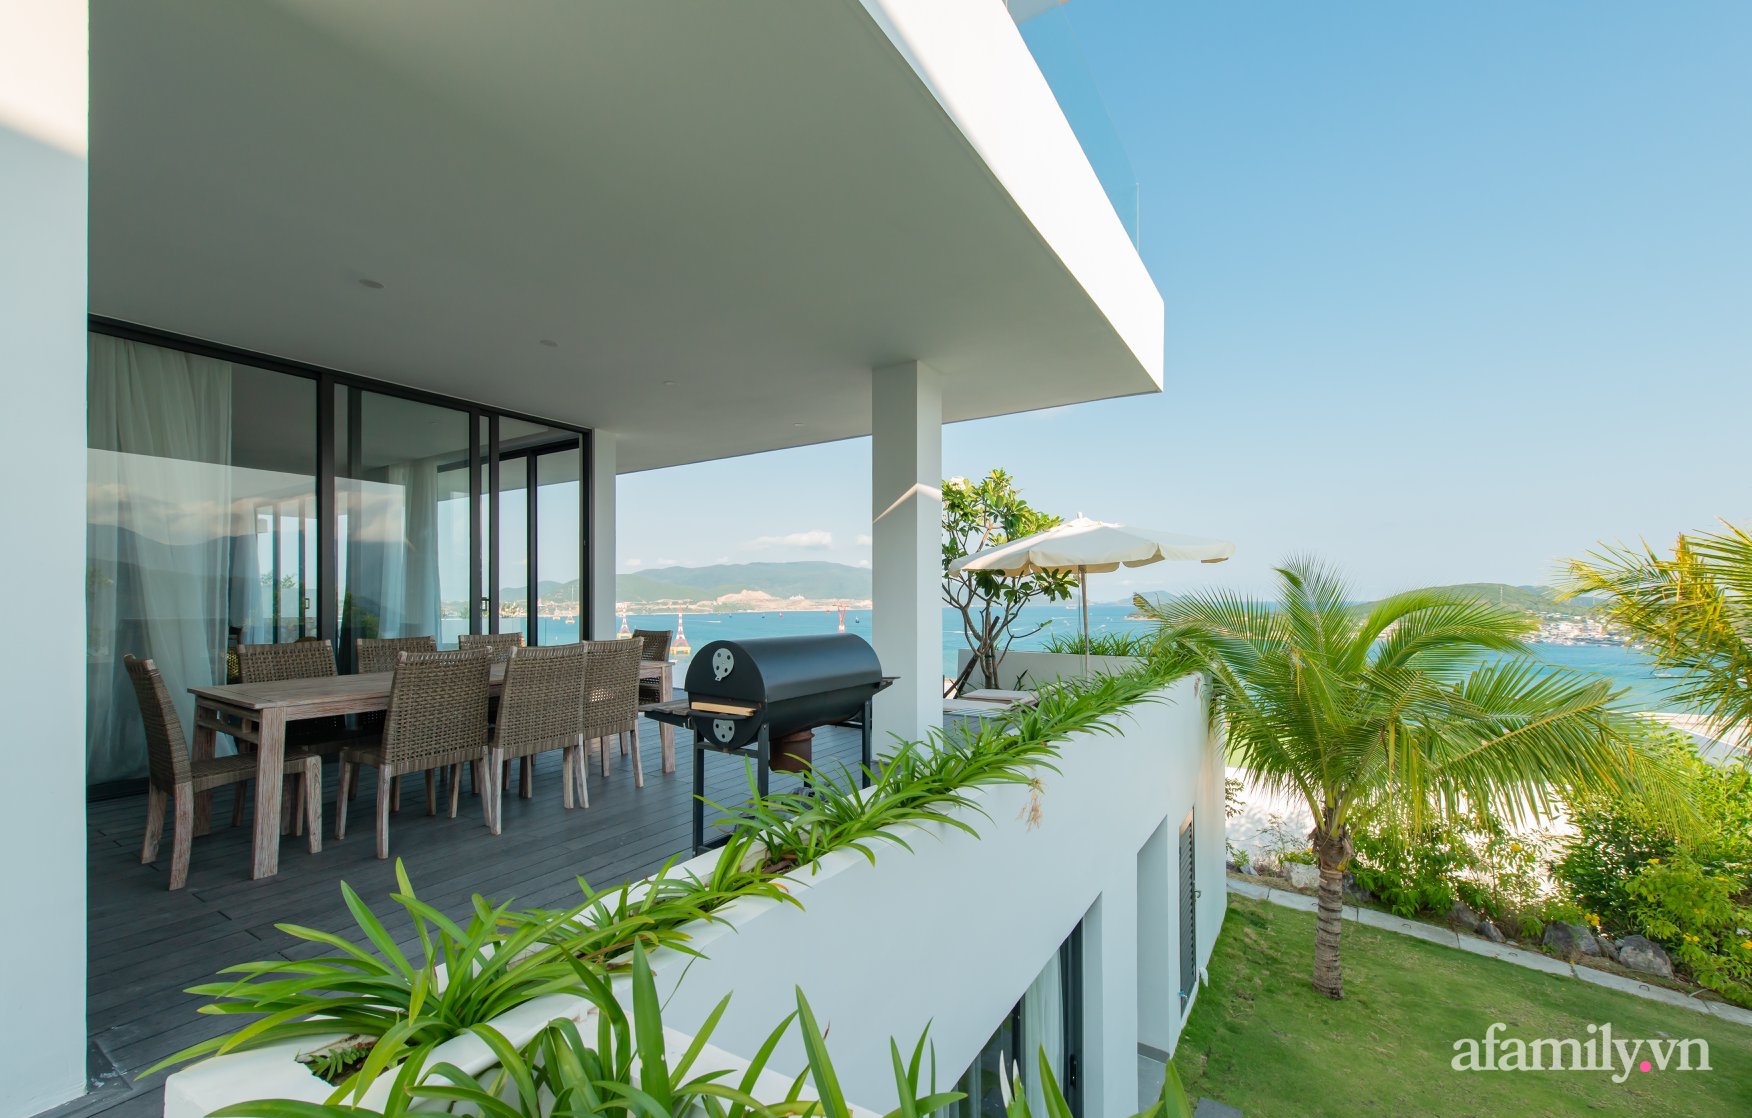 Ngôi nhà hướng biển đẹp an nhiên với nội thất sang trọng cùng bể bơi vô cực ở Nha Trang - Ảnh 8.